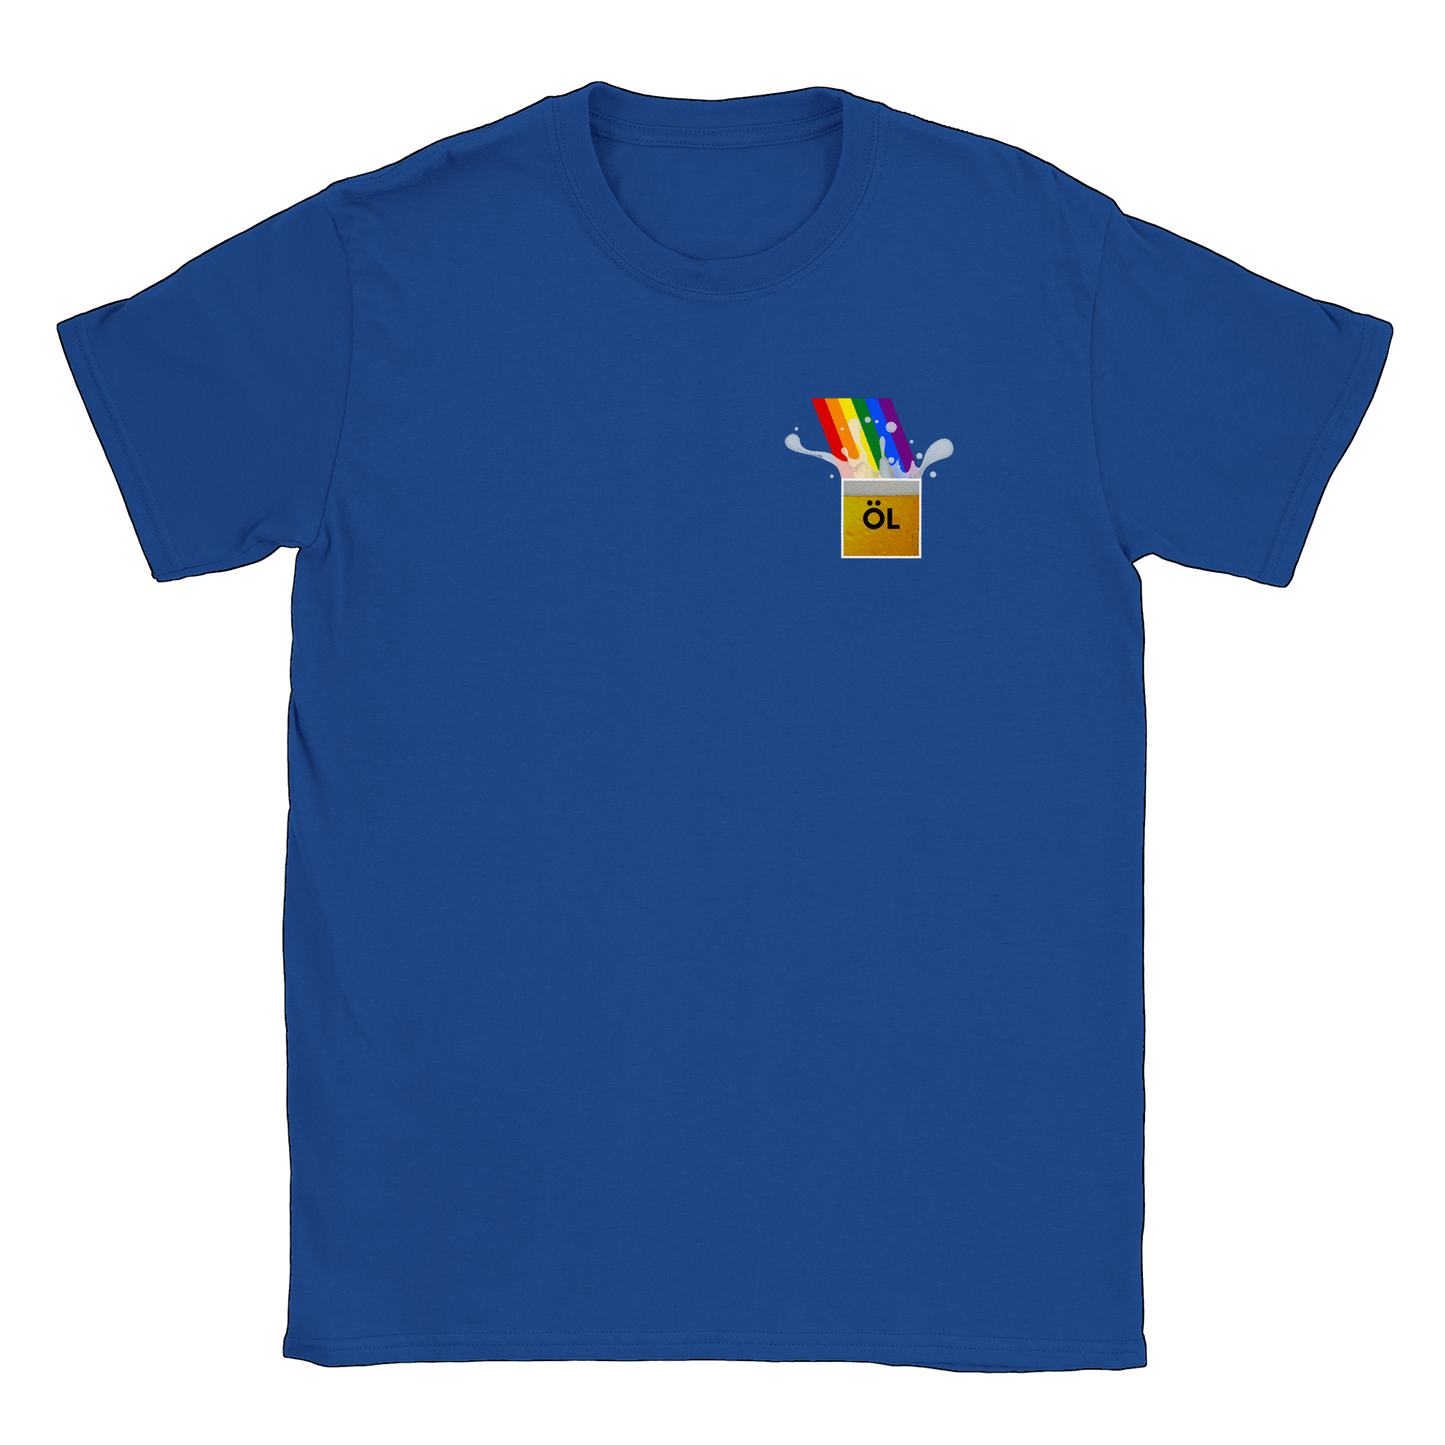 Öl vid regnbågens slut - T-shirt Royal